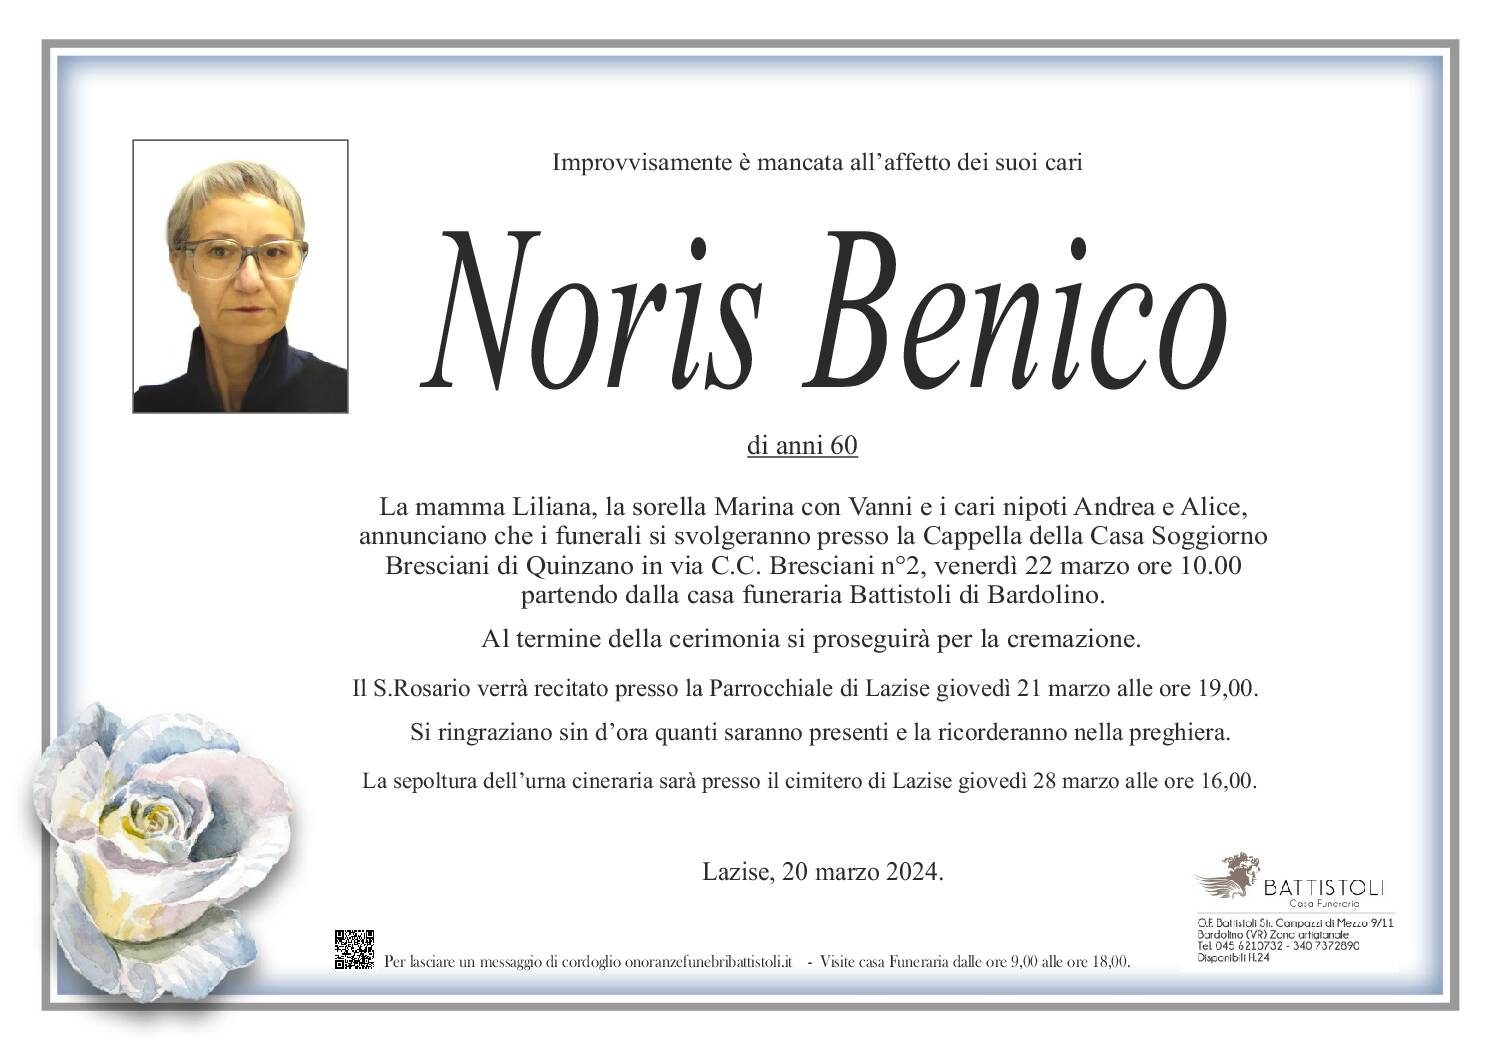 Benico Noris